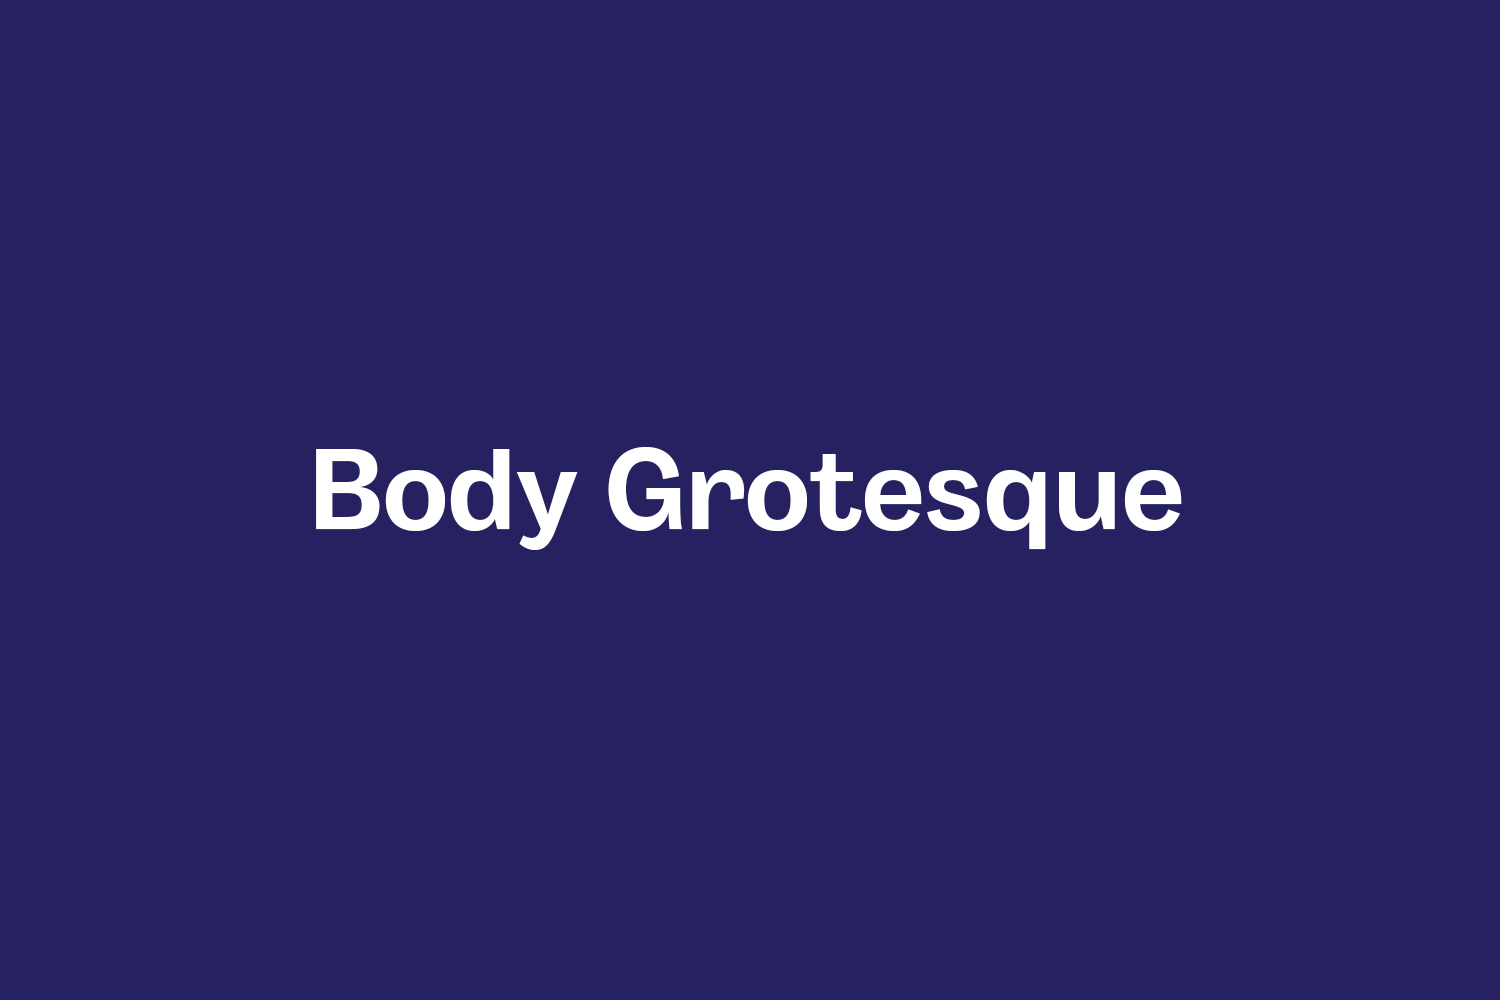 Body Grotesque Free Font